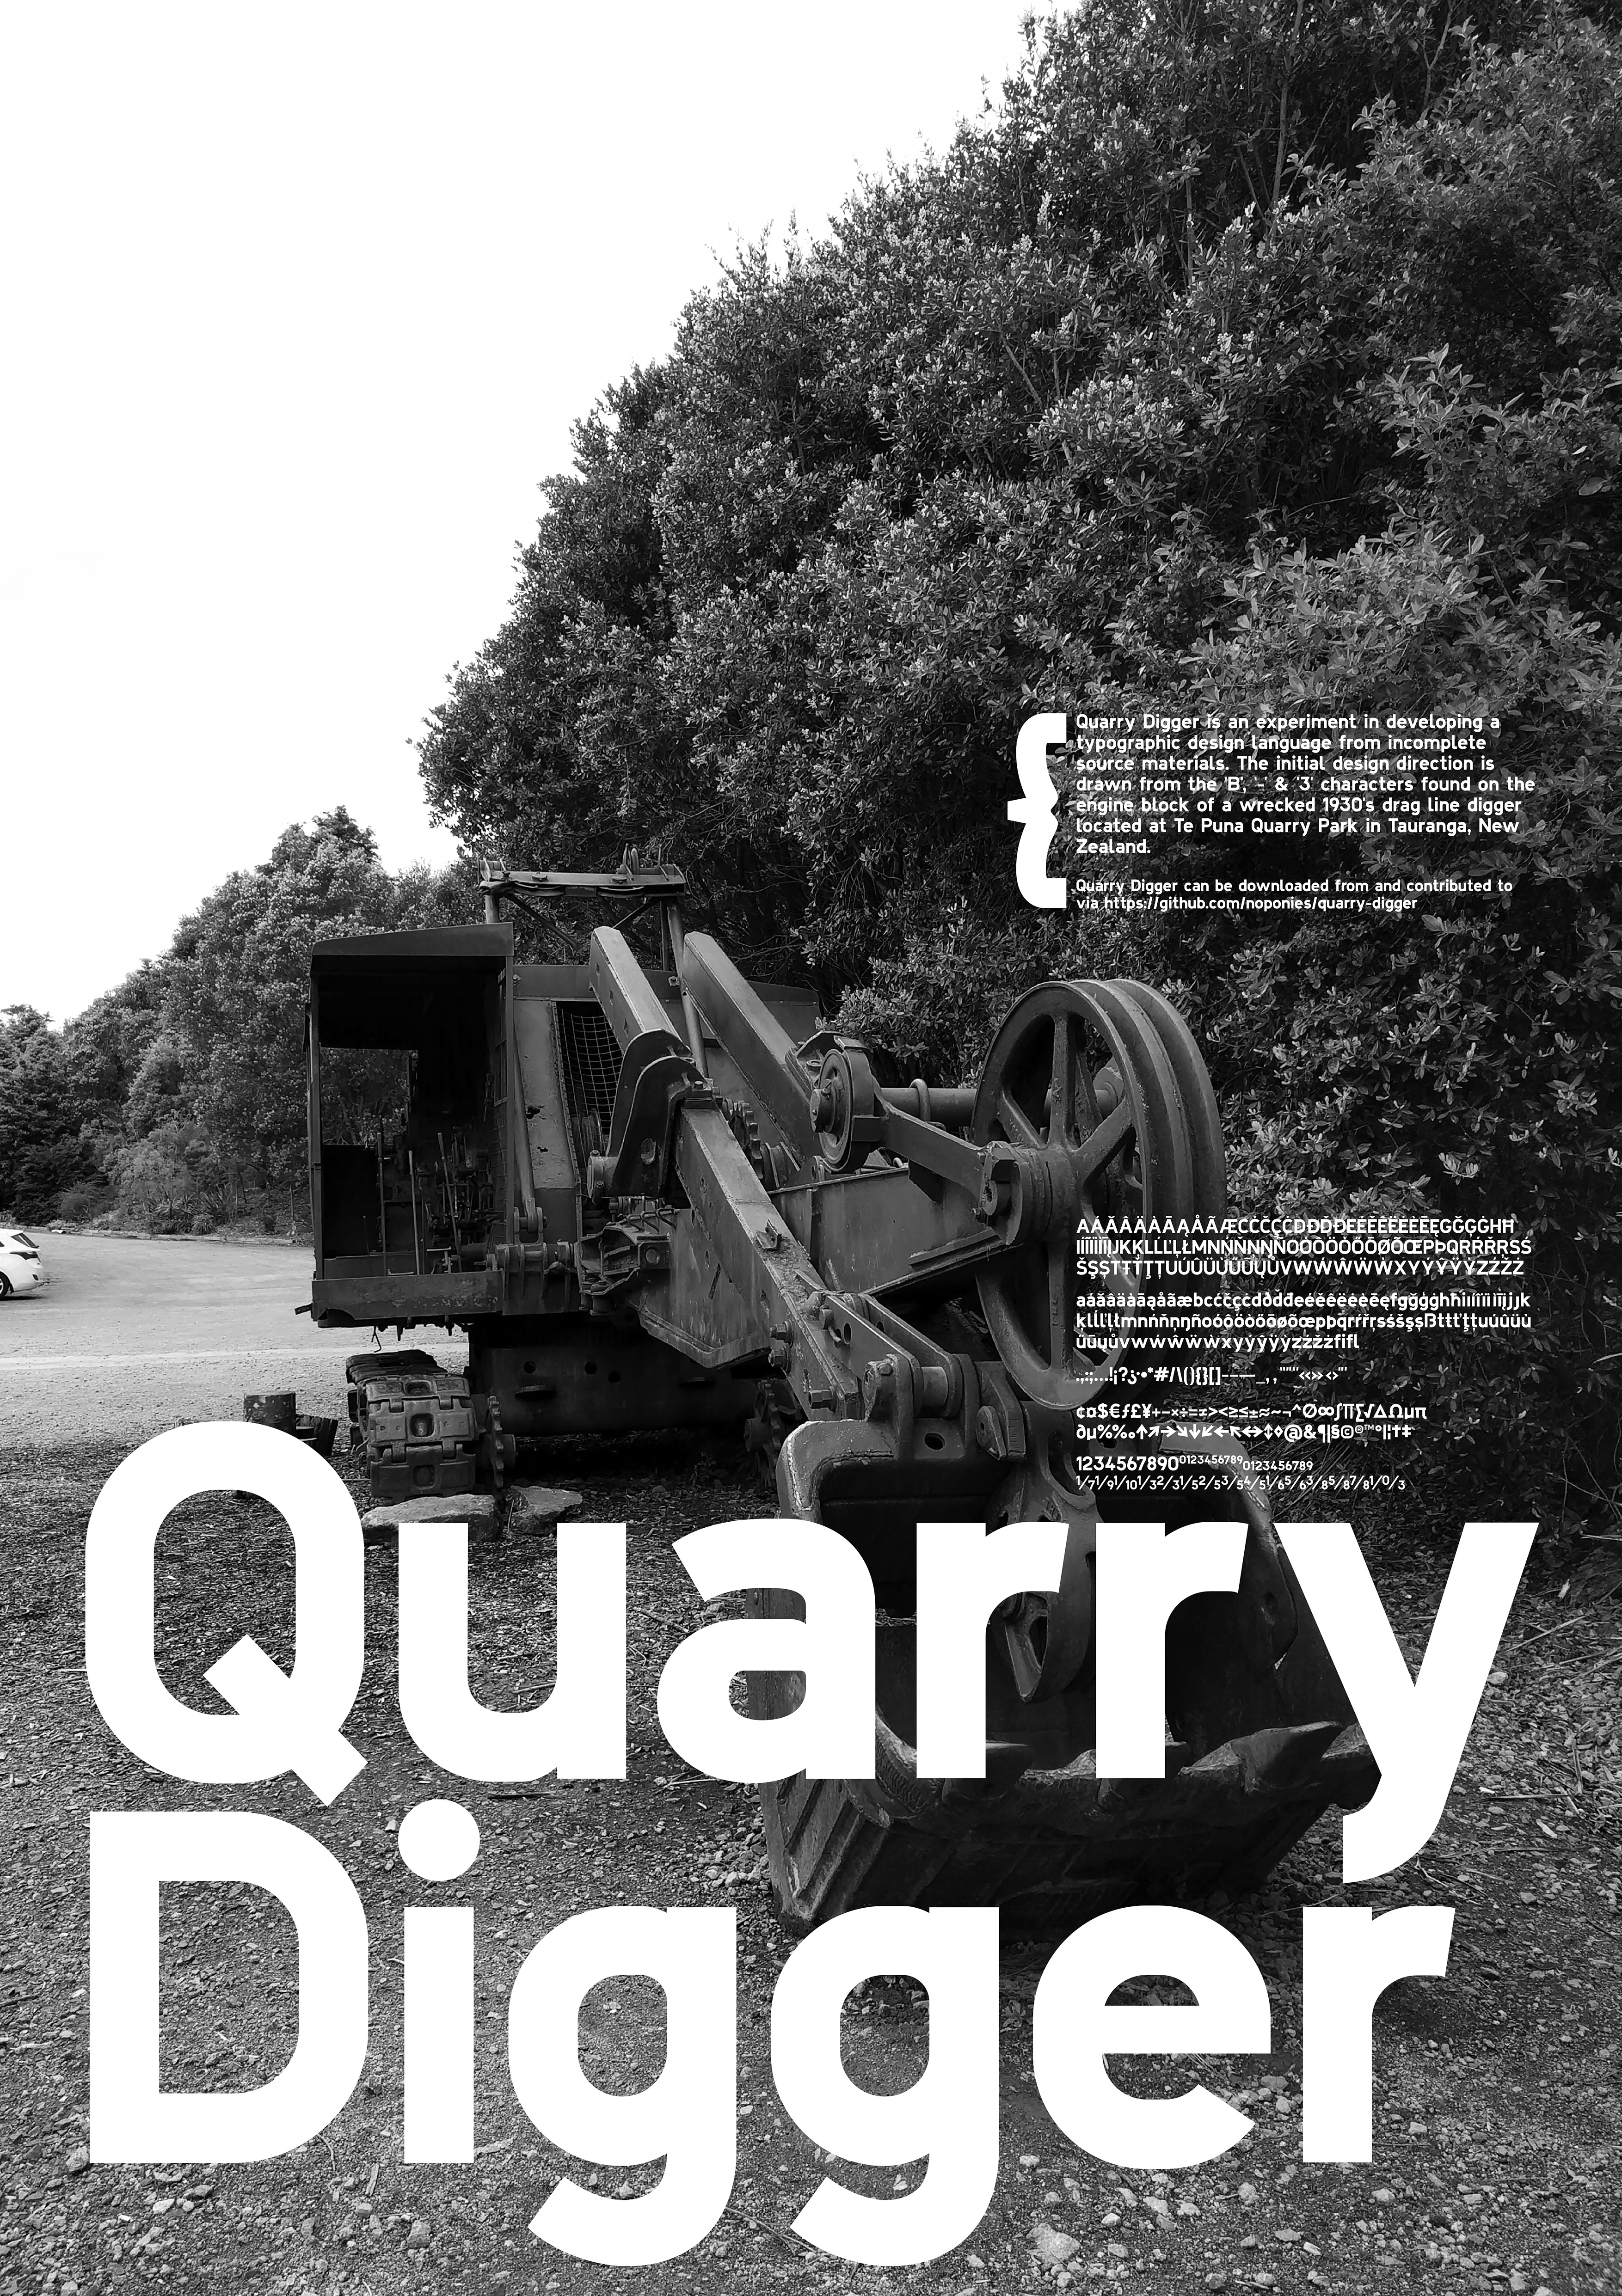 Quarry Digger